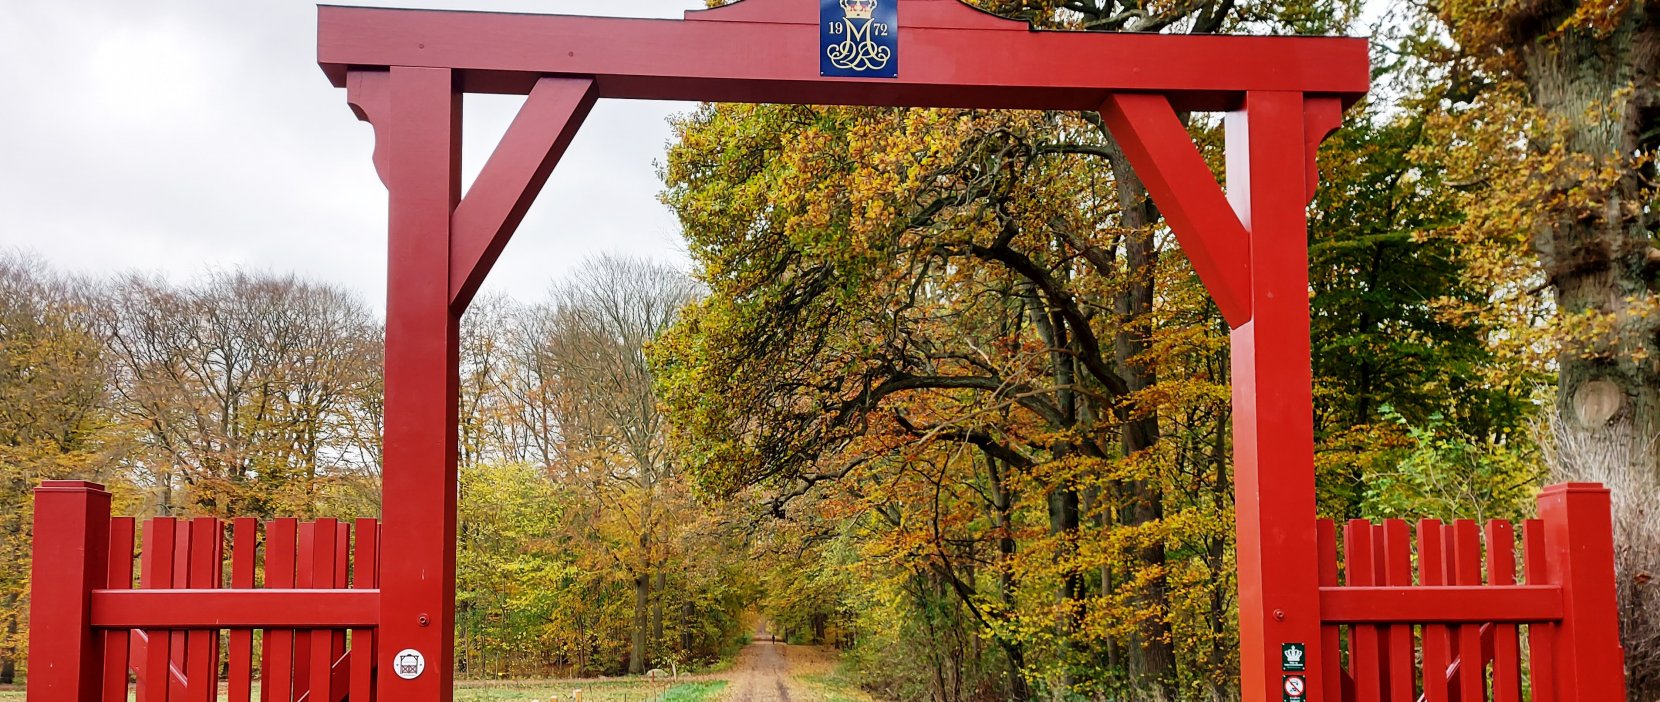 De røde porte med efterårsfarver